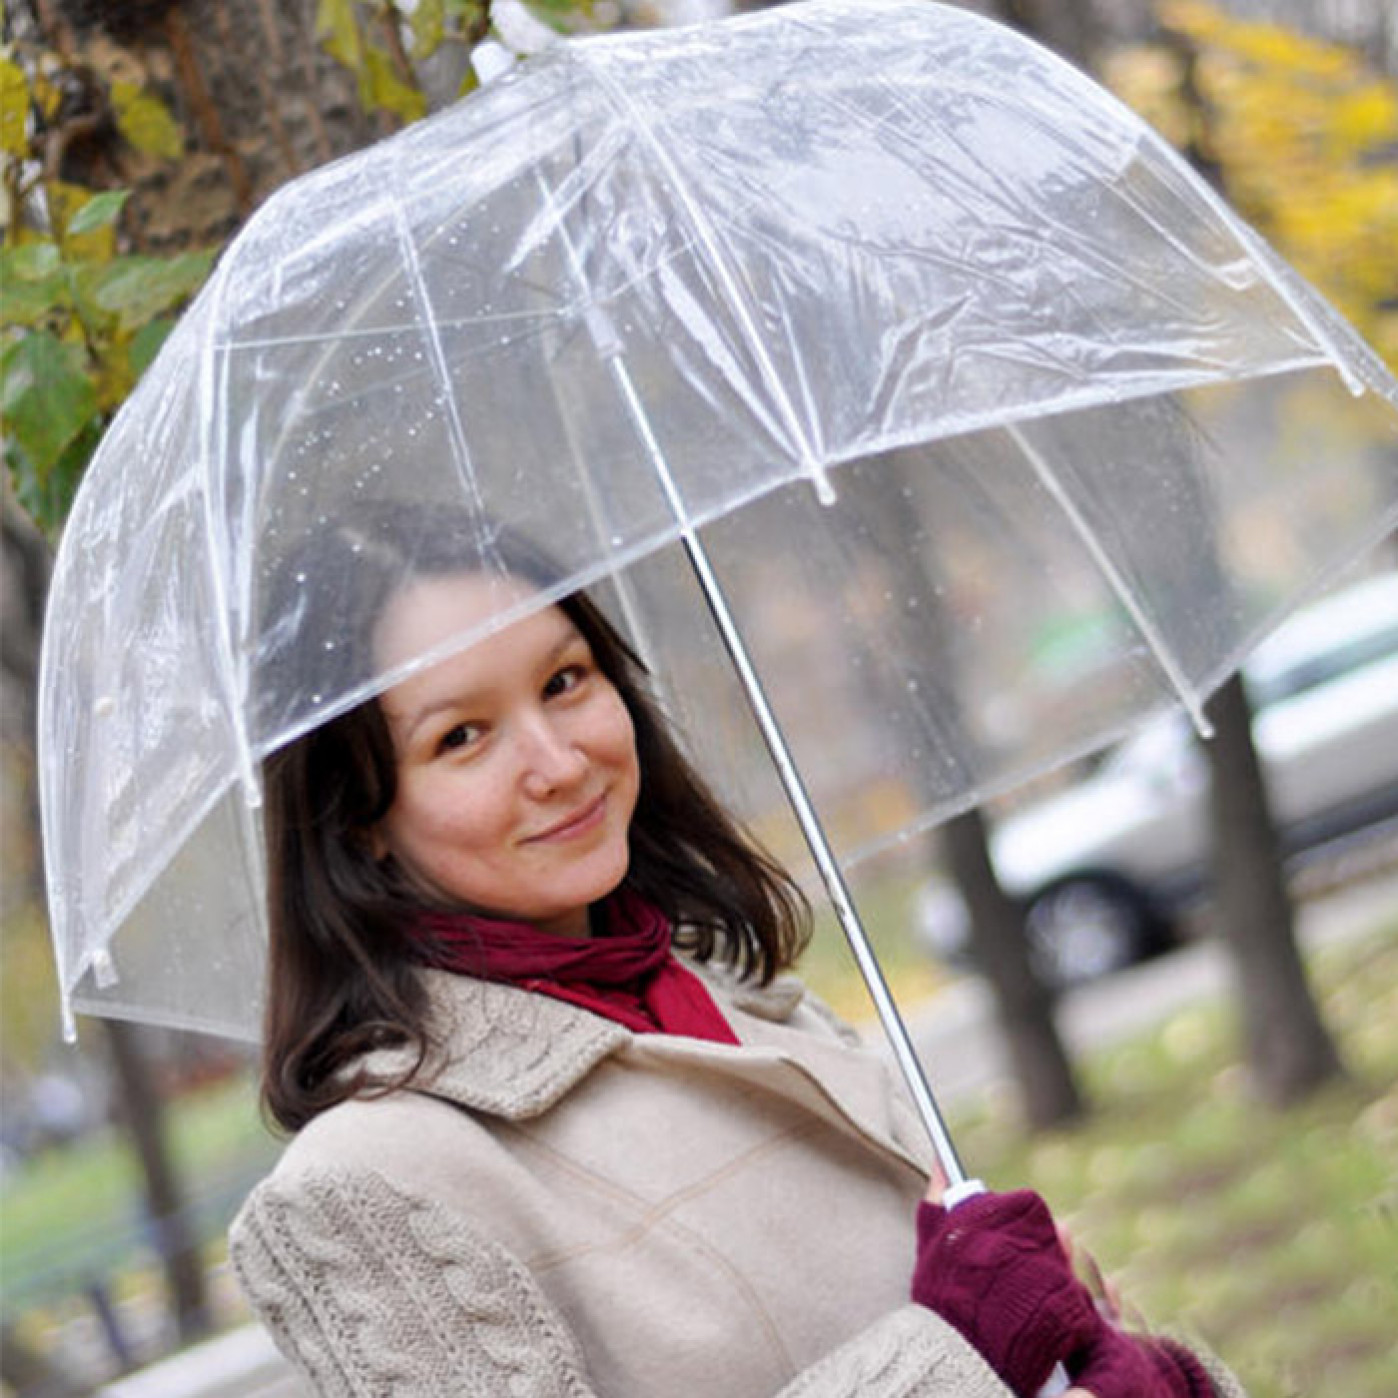 Света зонтик. Стеклянный зонт. Прозрачный зонт купол женский с человеком. Фотосессия с прозрачным зонтом куполом. С прозрачным зонтом на улице.